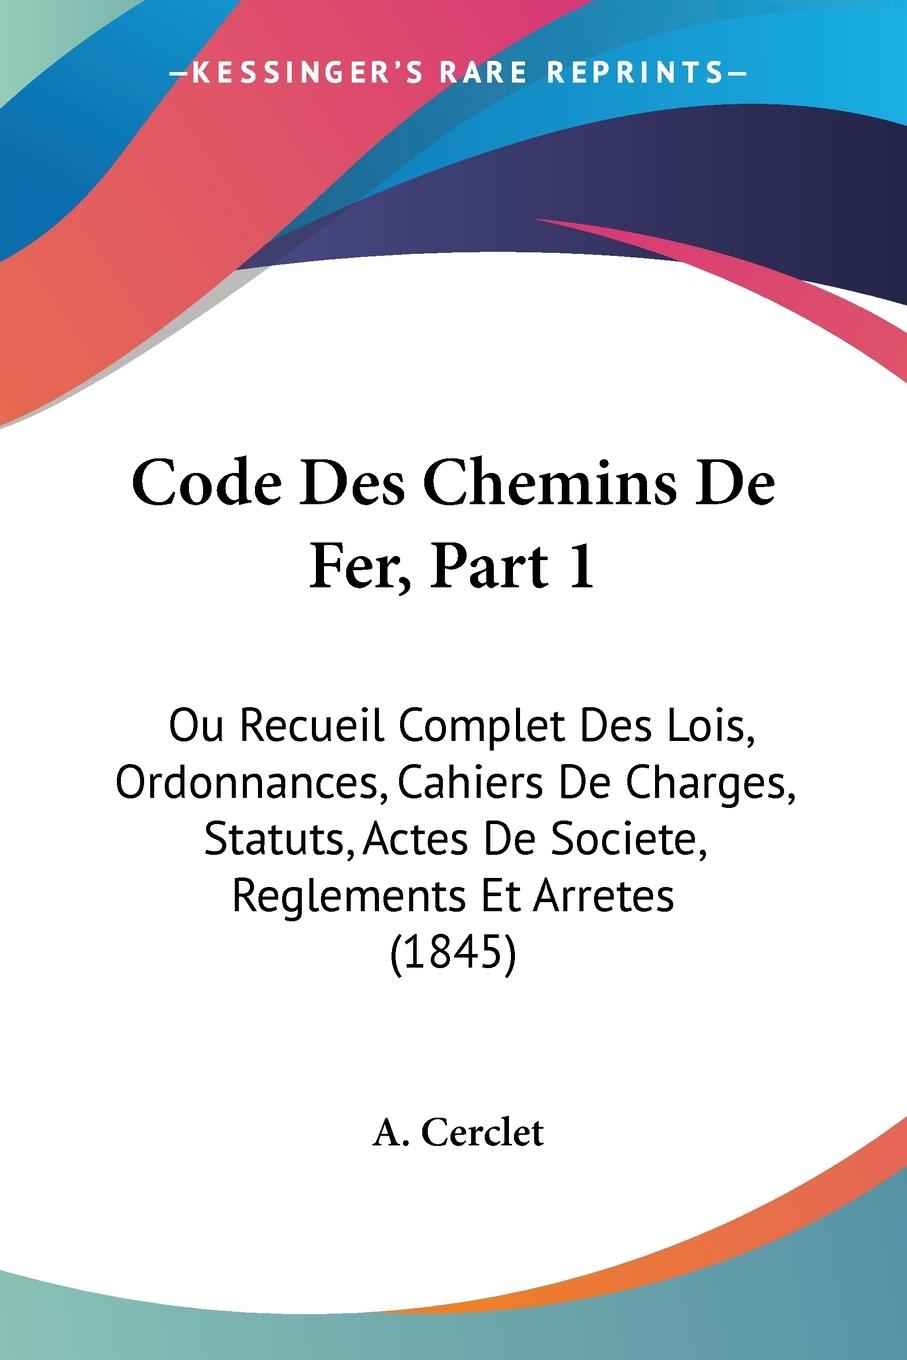 Code Des Chemins De Fer, Part 1 - Cerclet, A.